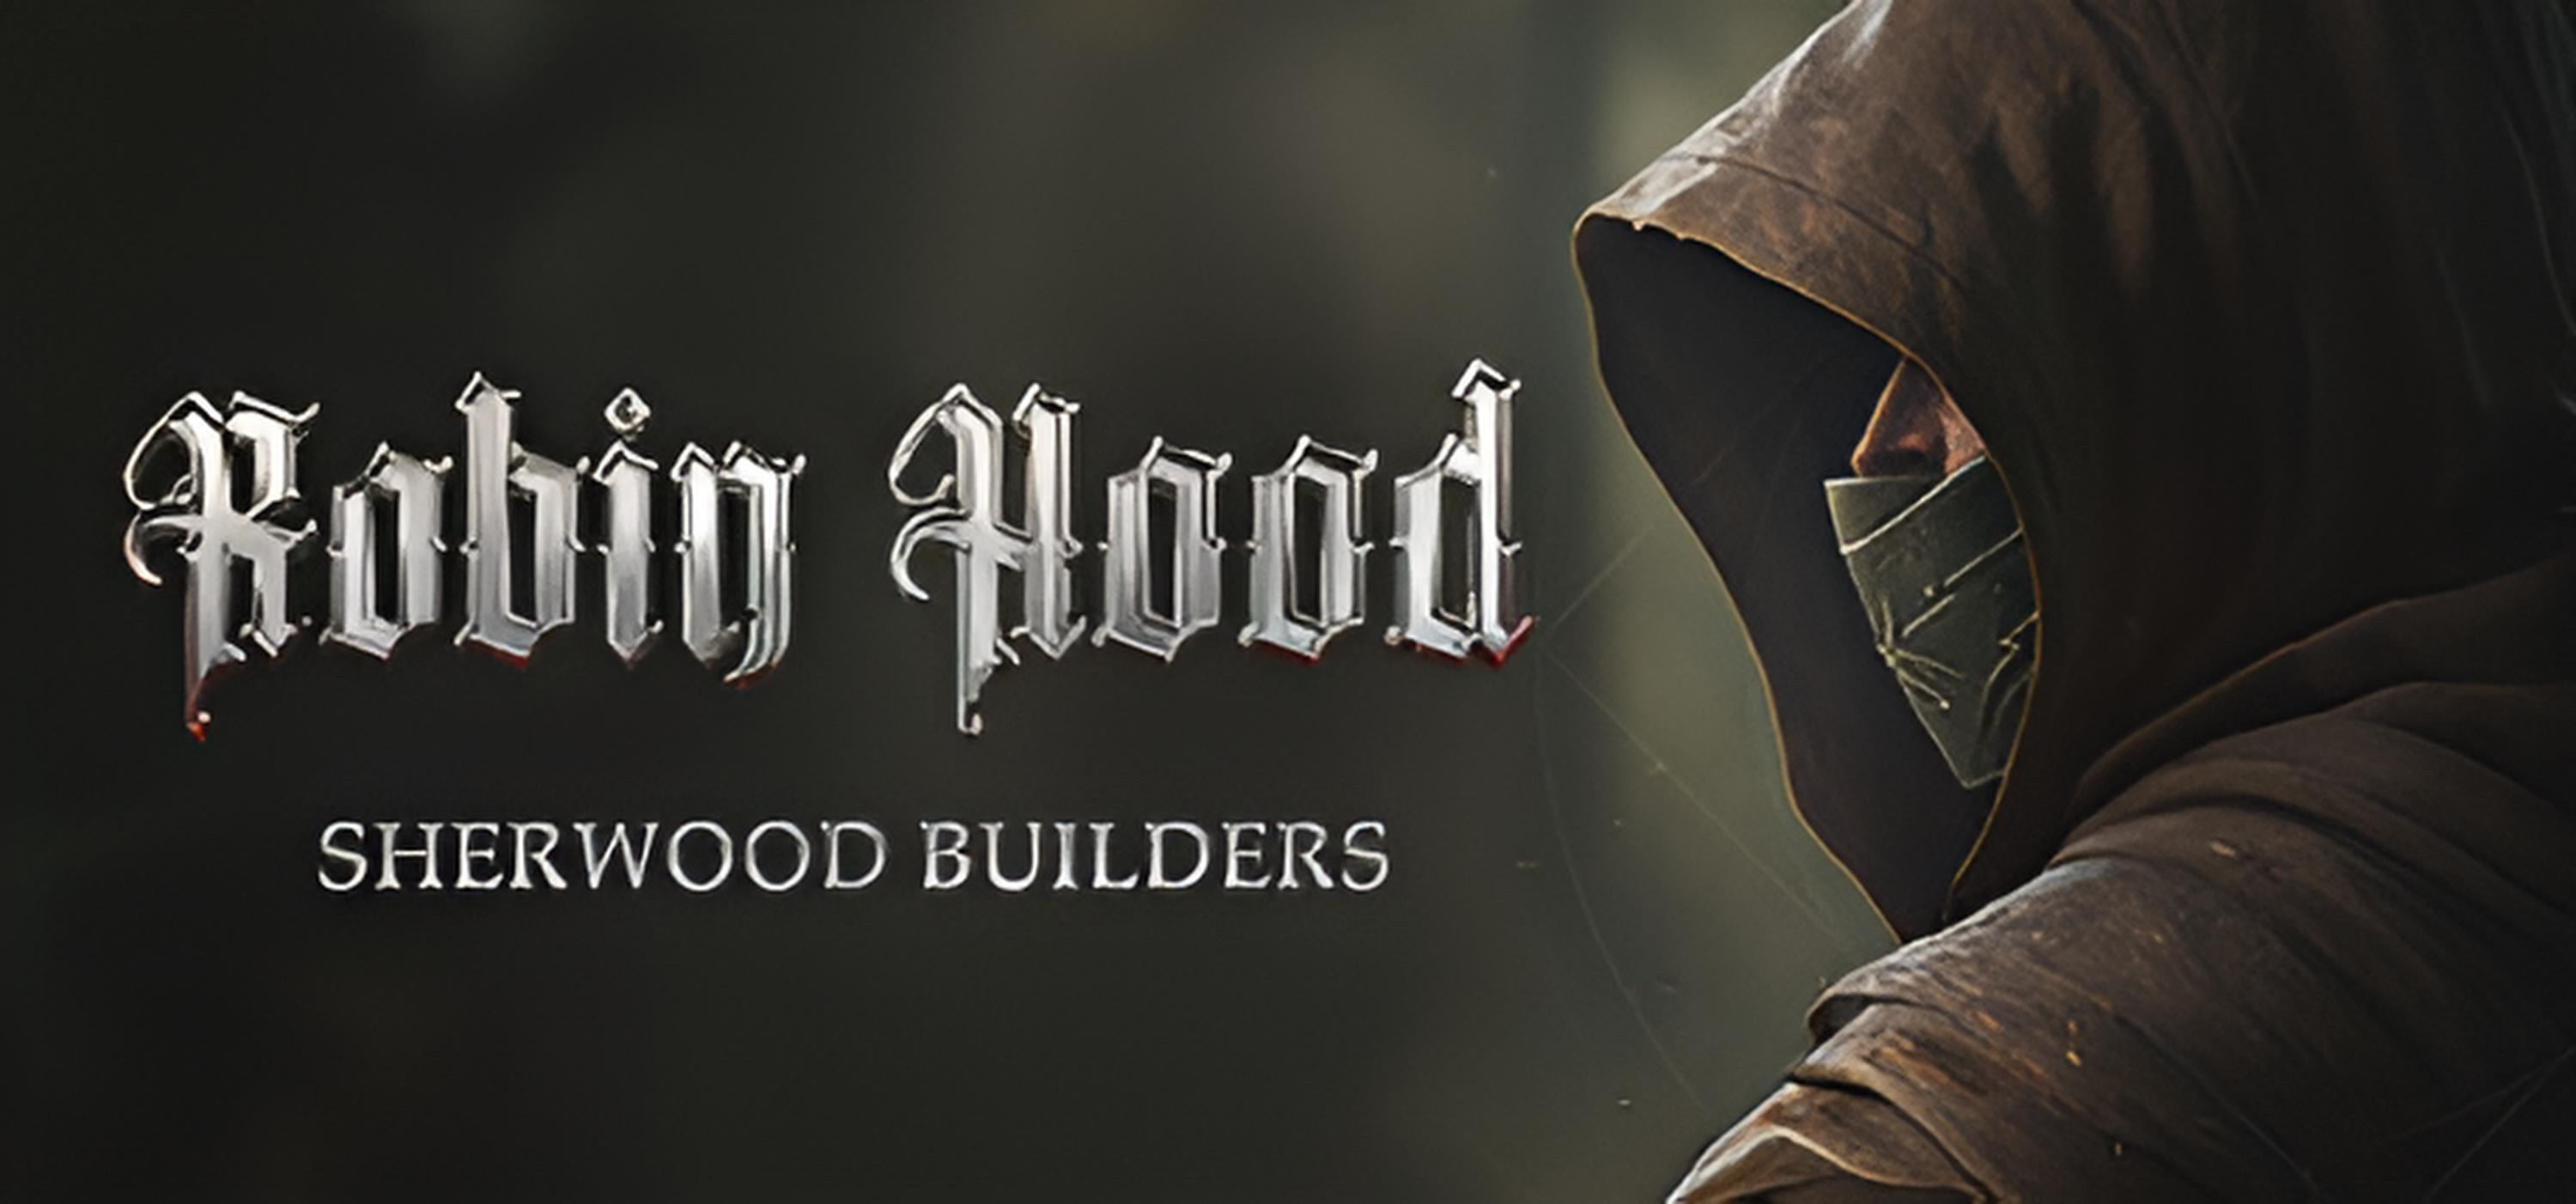 Обложка игры Robin Hood - Sherwood Builders